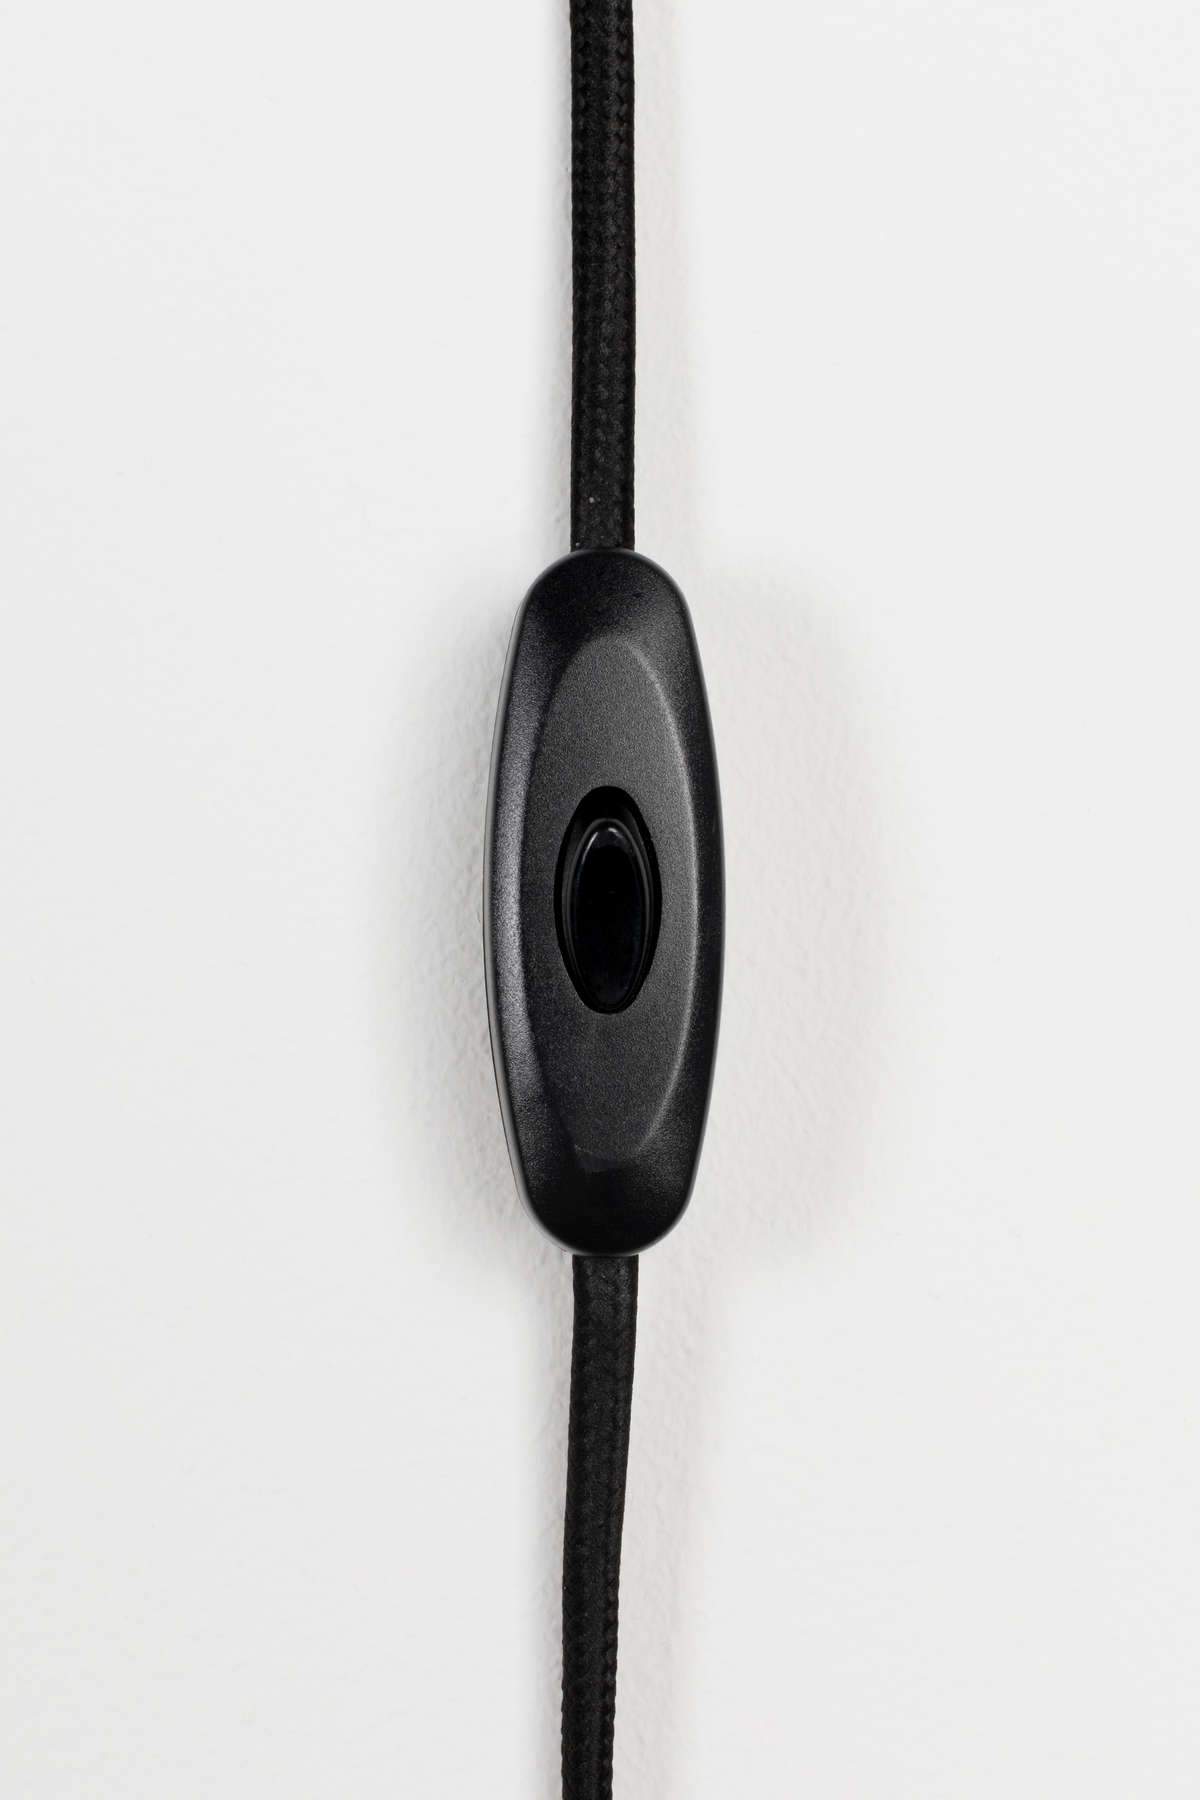 SKALA wall lamp black, Zuiver, Eye on Design